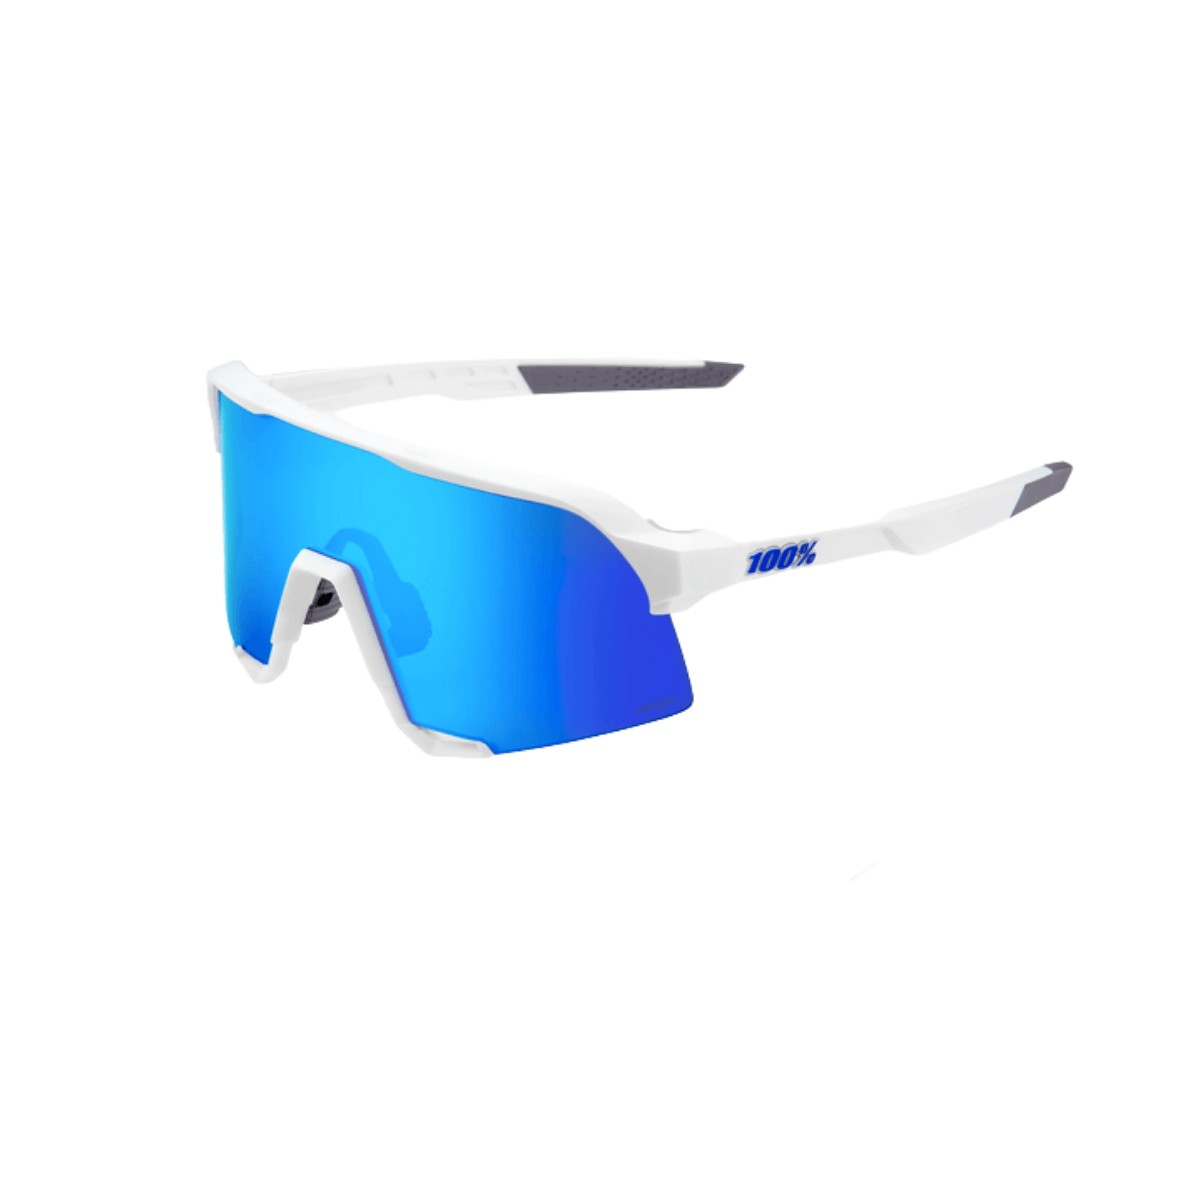 Gafas 100% S3 Hiper Azul Multilayer Lente Mirror